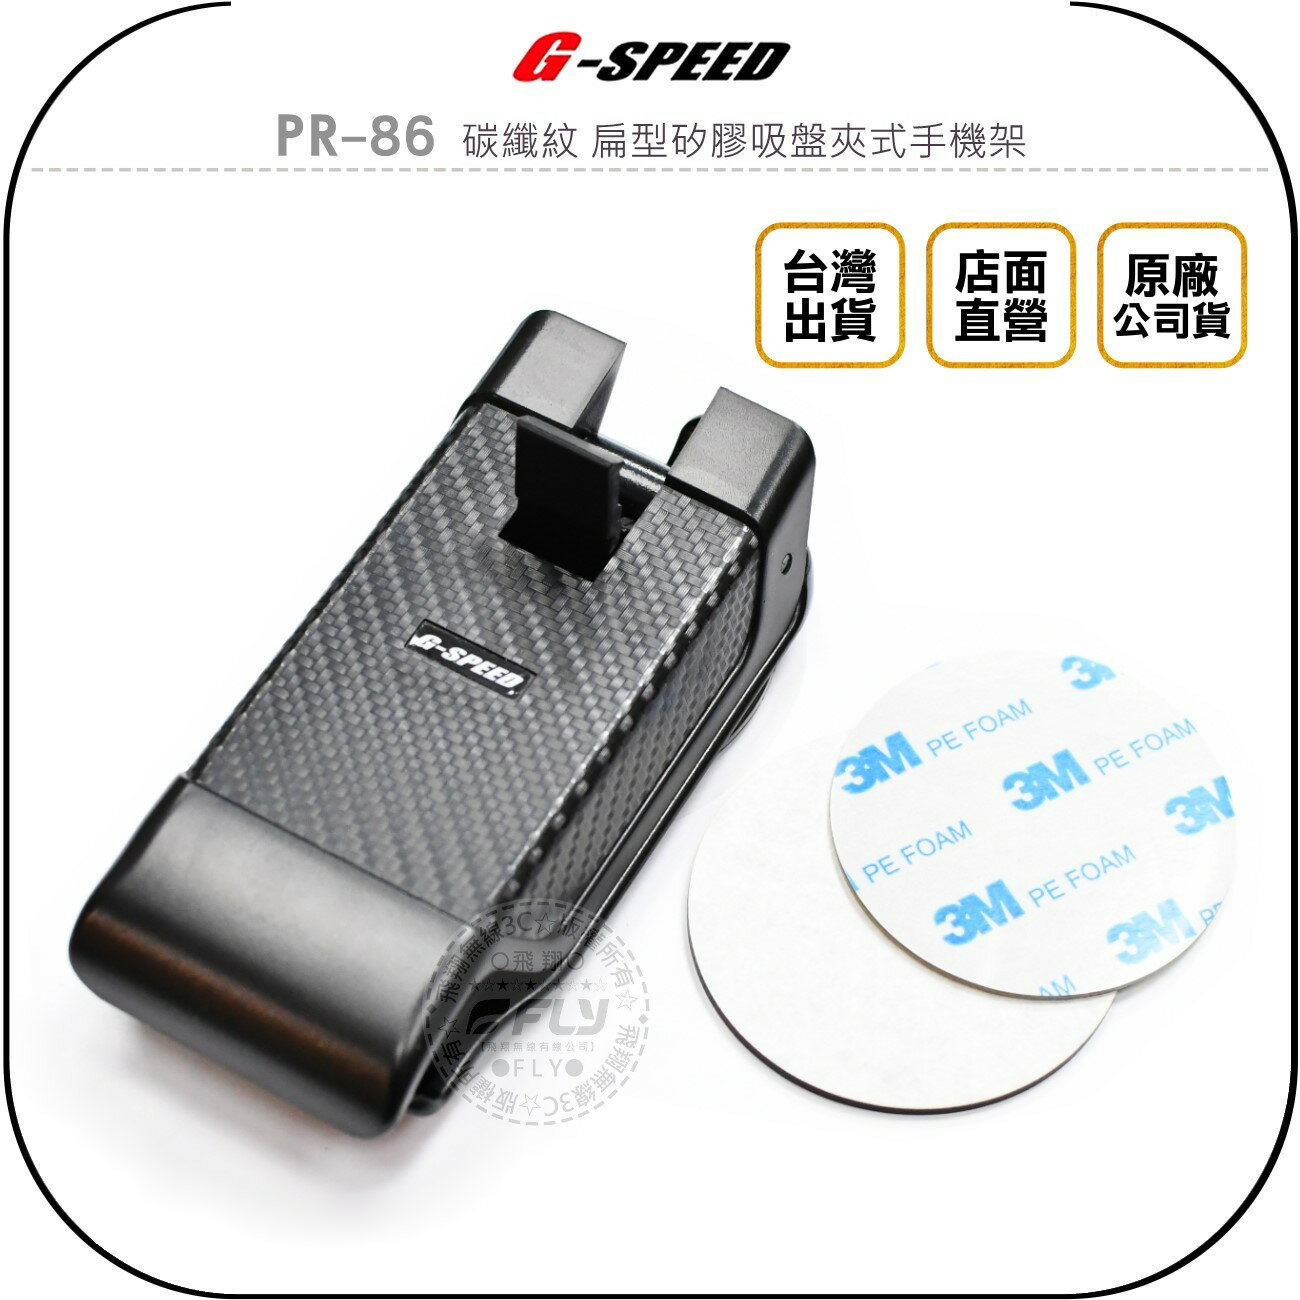 《飛翔無線3C》G-SPEED PR-86 碳纖紋 扁型矽膠吸盤夾式手機架◉公司貨◉衛星導航座◉車內手機夾